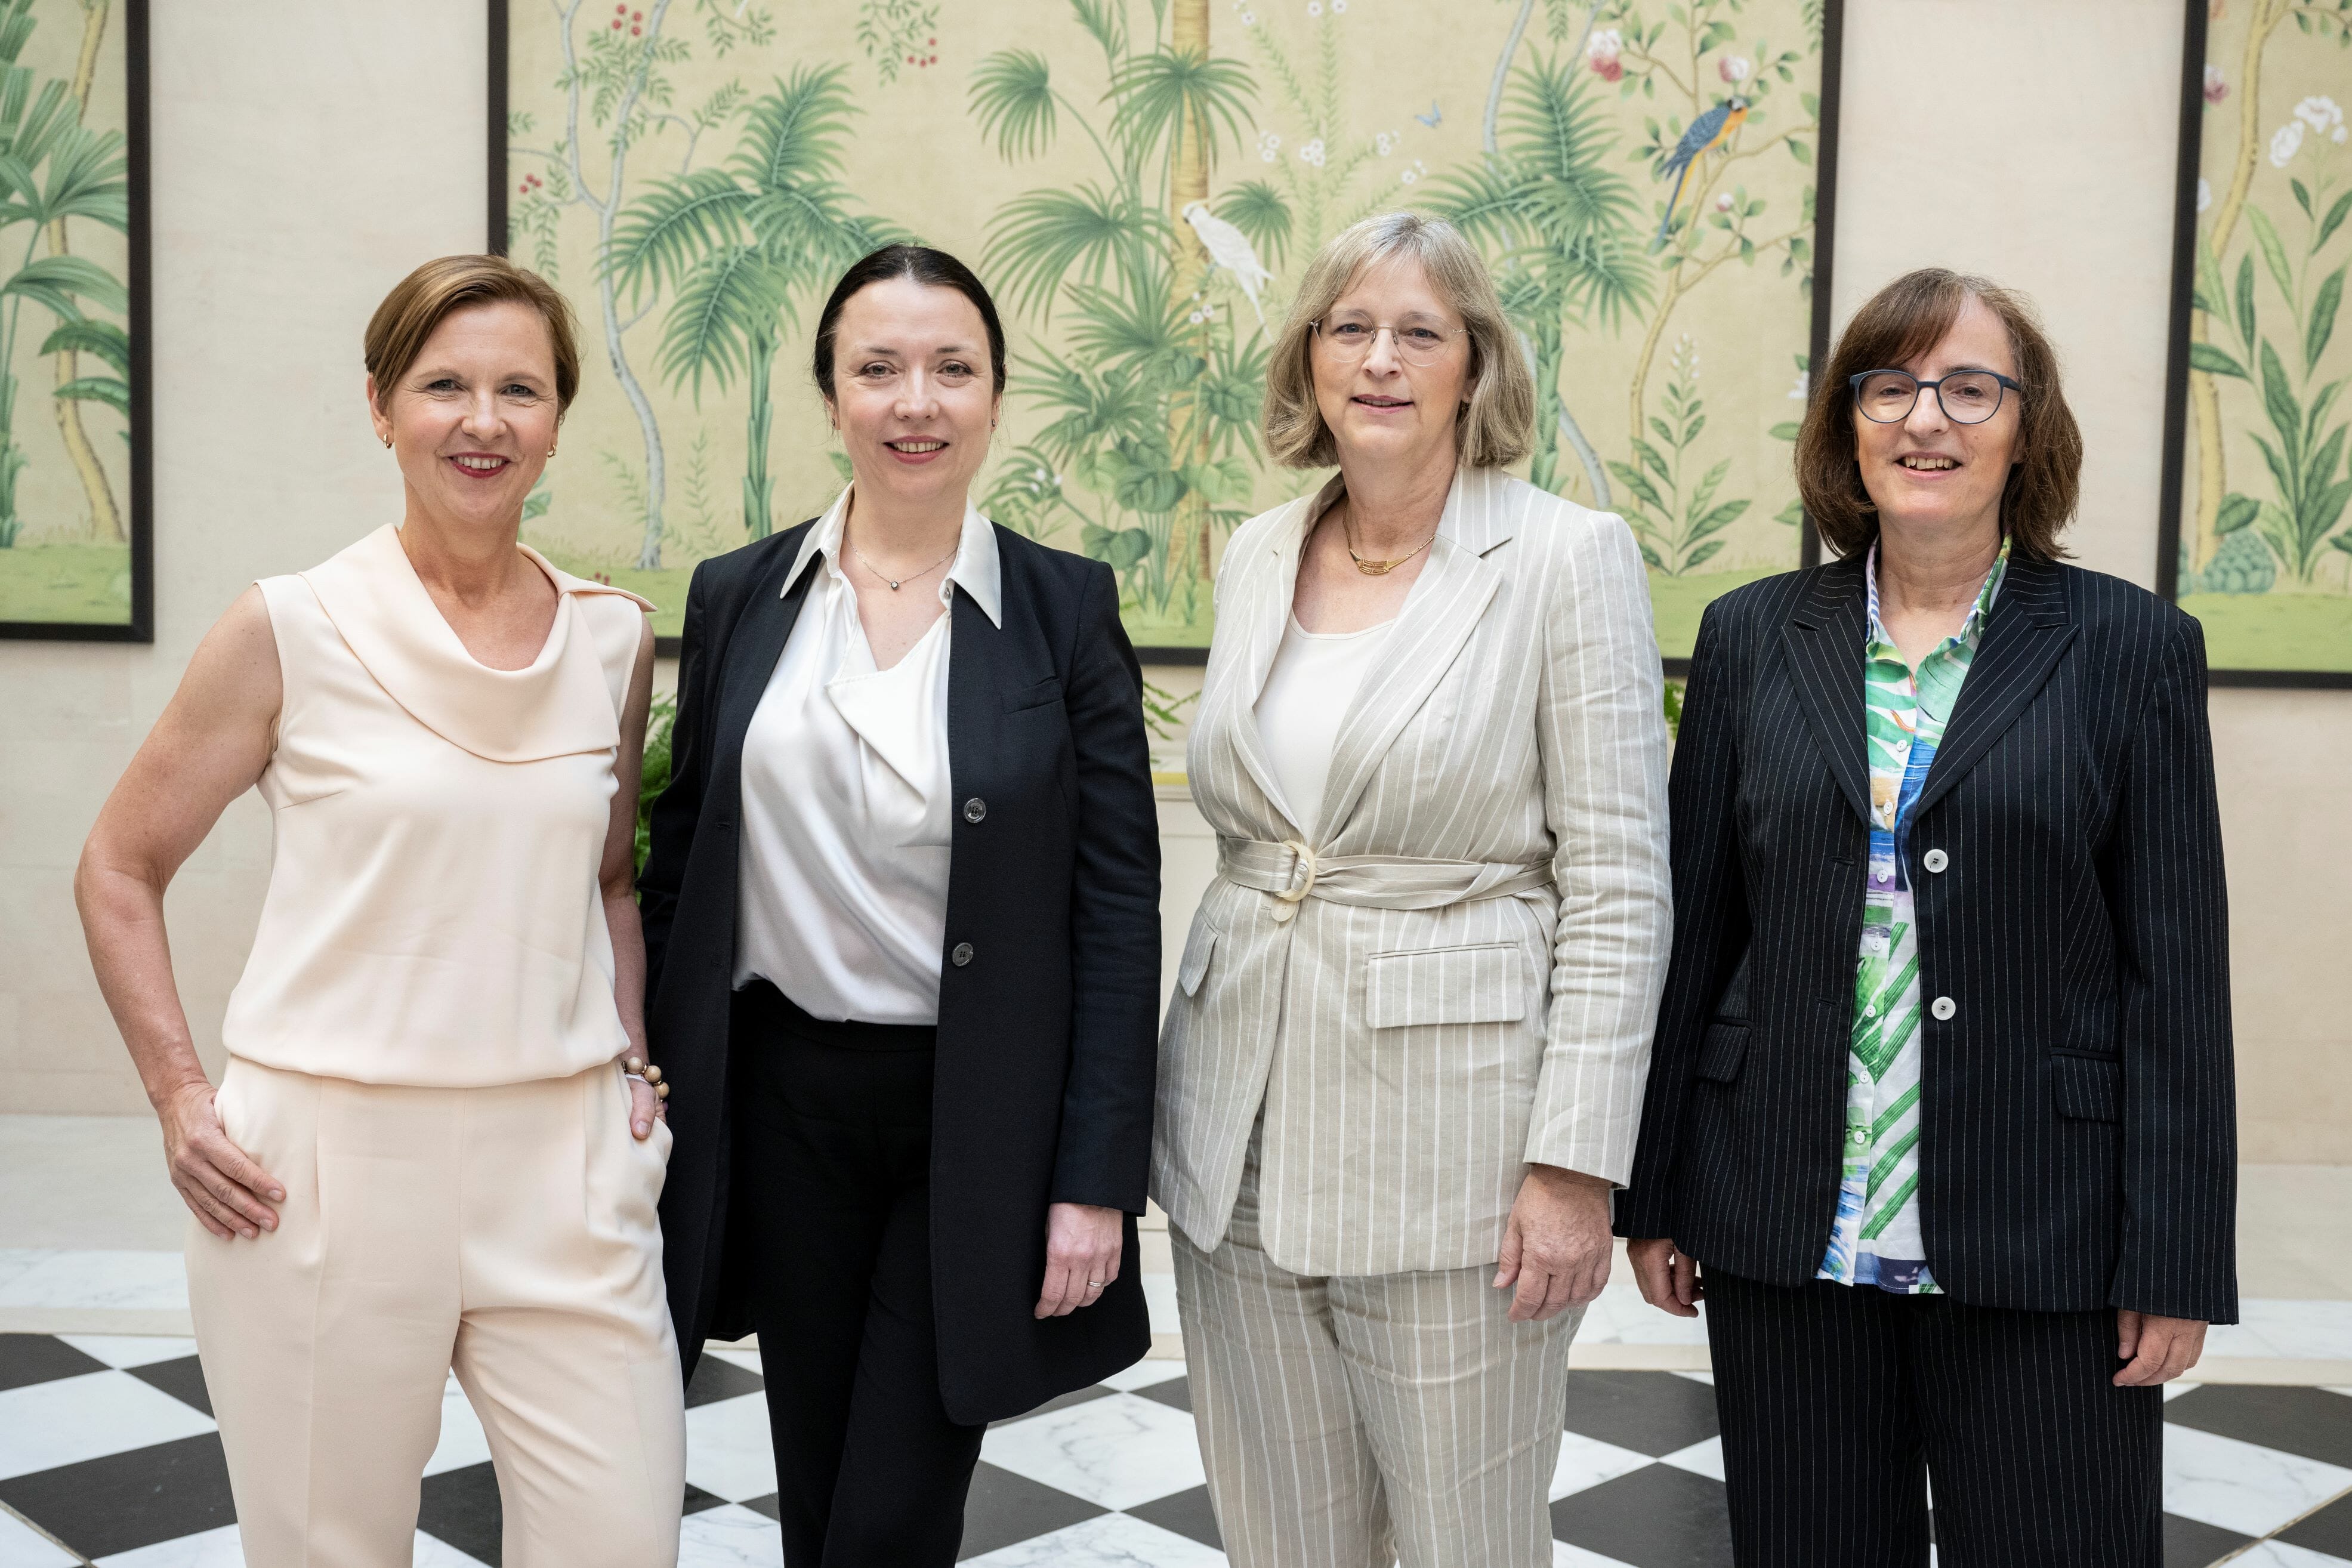 Die Frauen im Erweiterten Präsidium des Wirtschaftsforums der SPD: Dr. Tanja Wielgoß, Prof. Dr. Ines Zenke, Hiltrud Dorothea Werner und Prof. Dr. Susanne Knorre (v.l.n.r.)